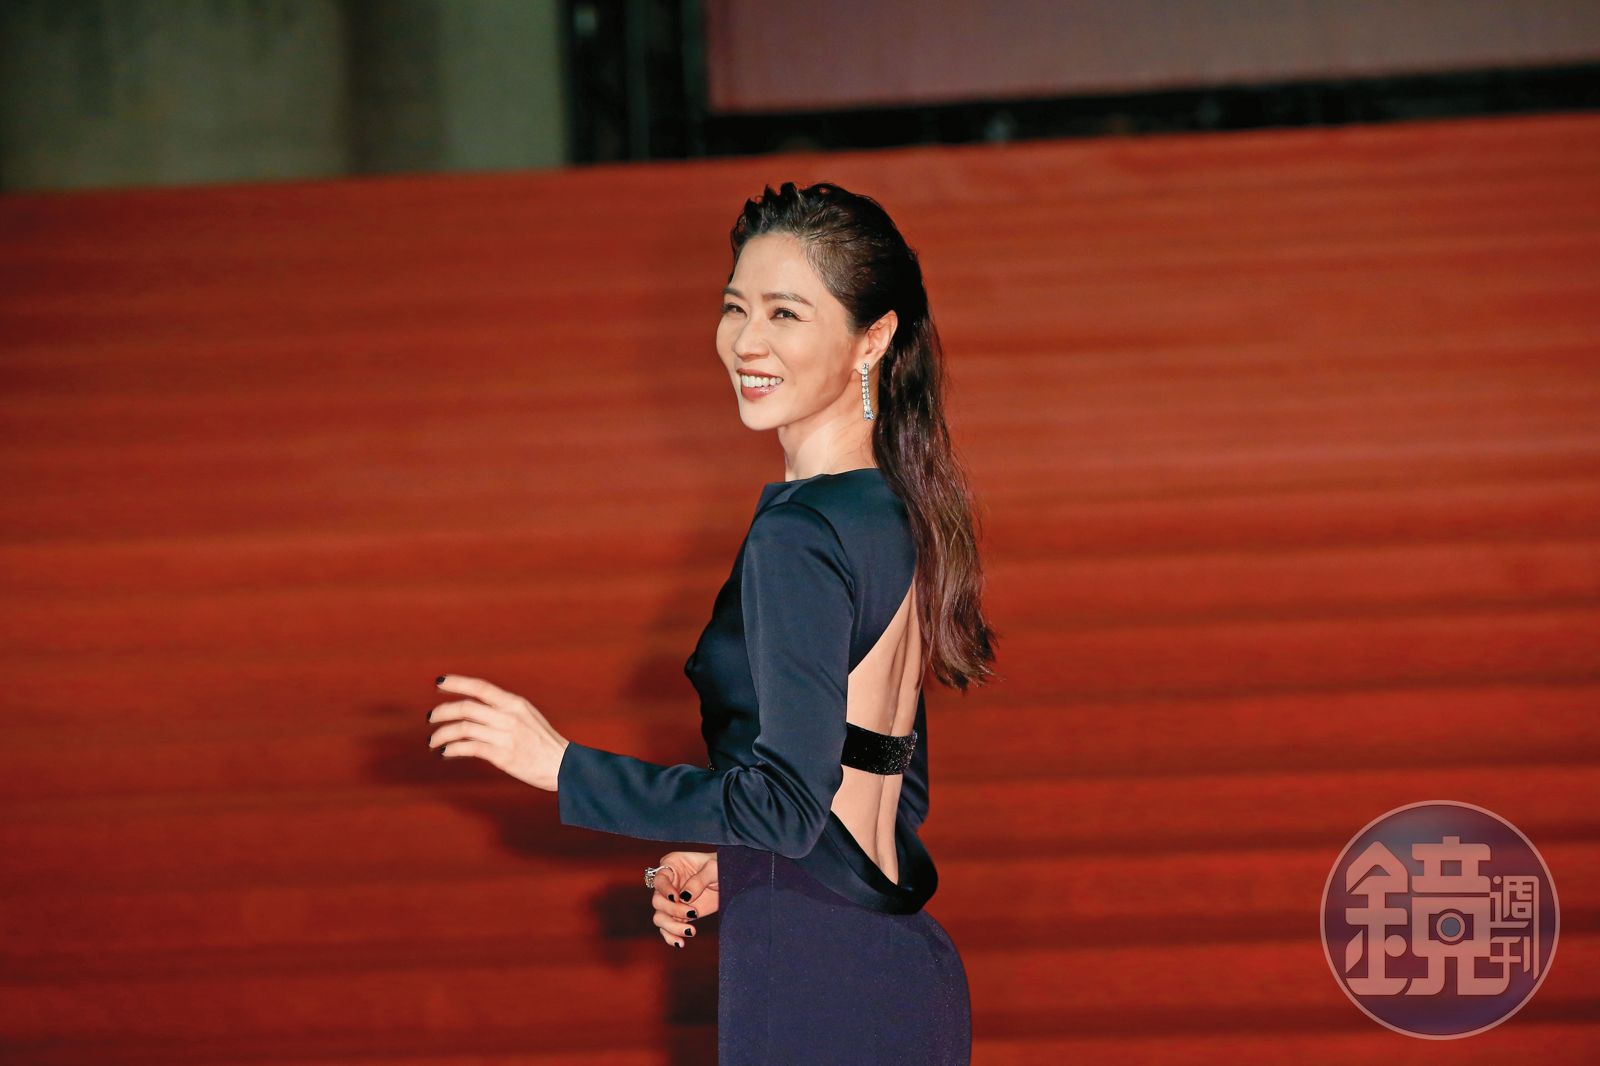 劉若英憑藉著強大人脈，也找來謝盈萱擔任新影集女主角